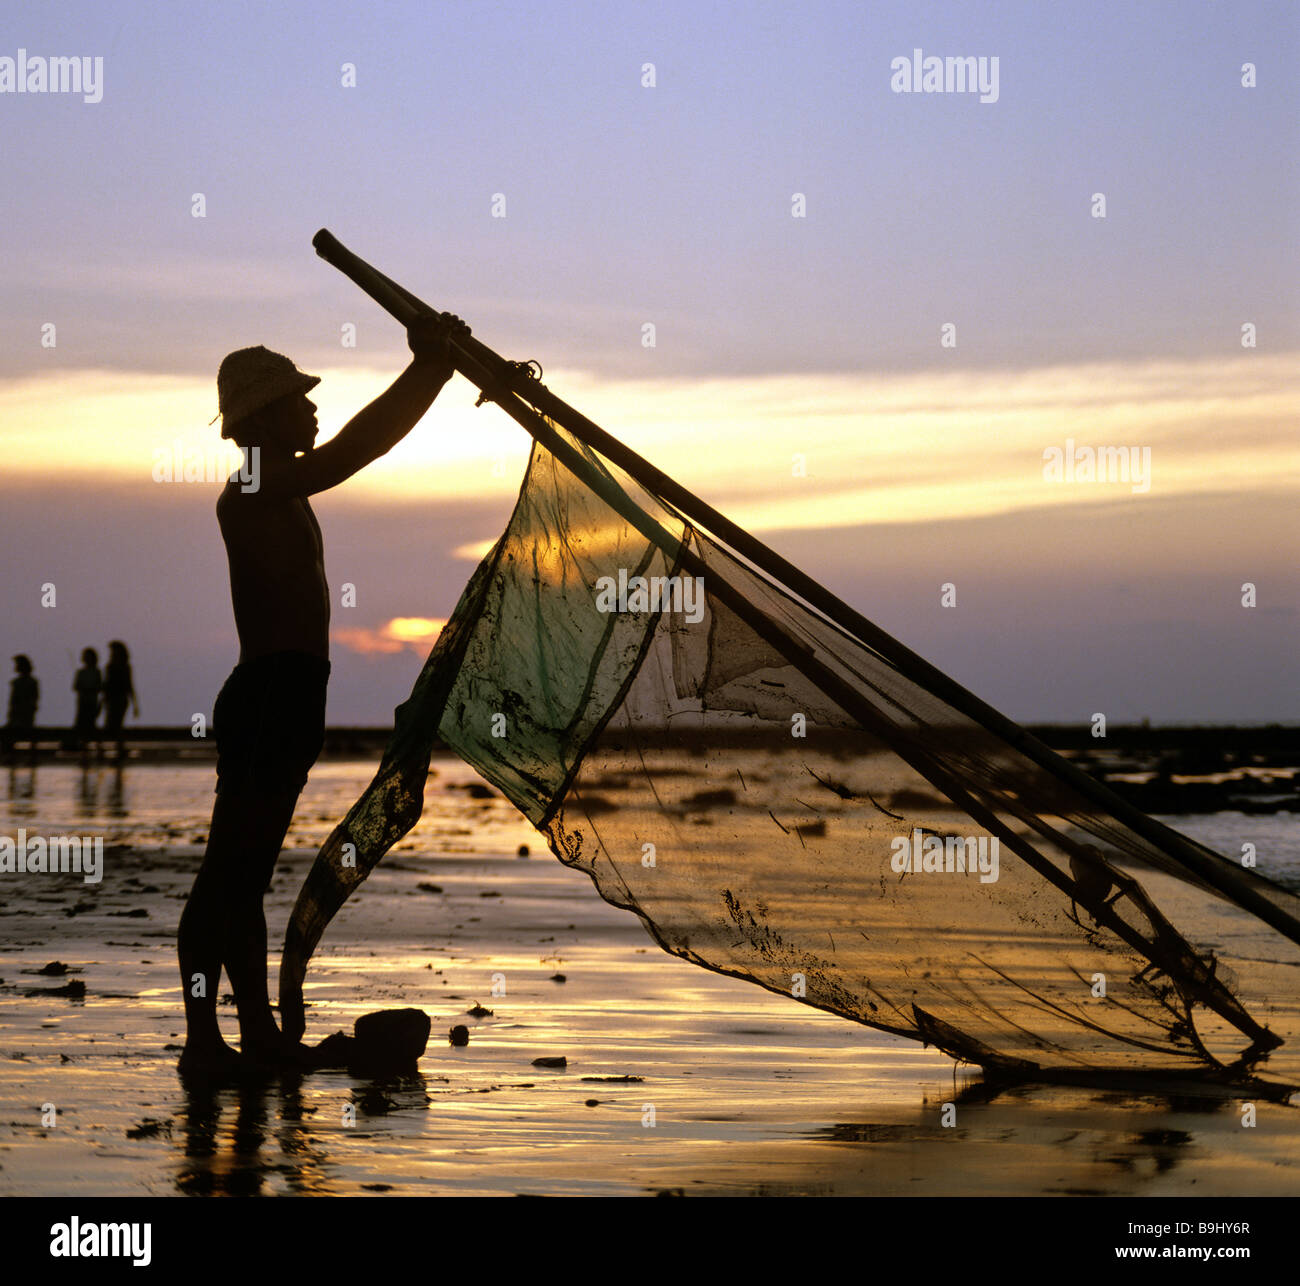 Pêcheur au filet, de l'océan, lumière du soir, Bali, Indonésie, Asie du sud-est Banque D'Images